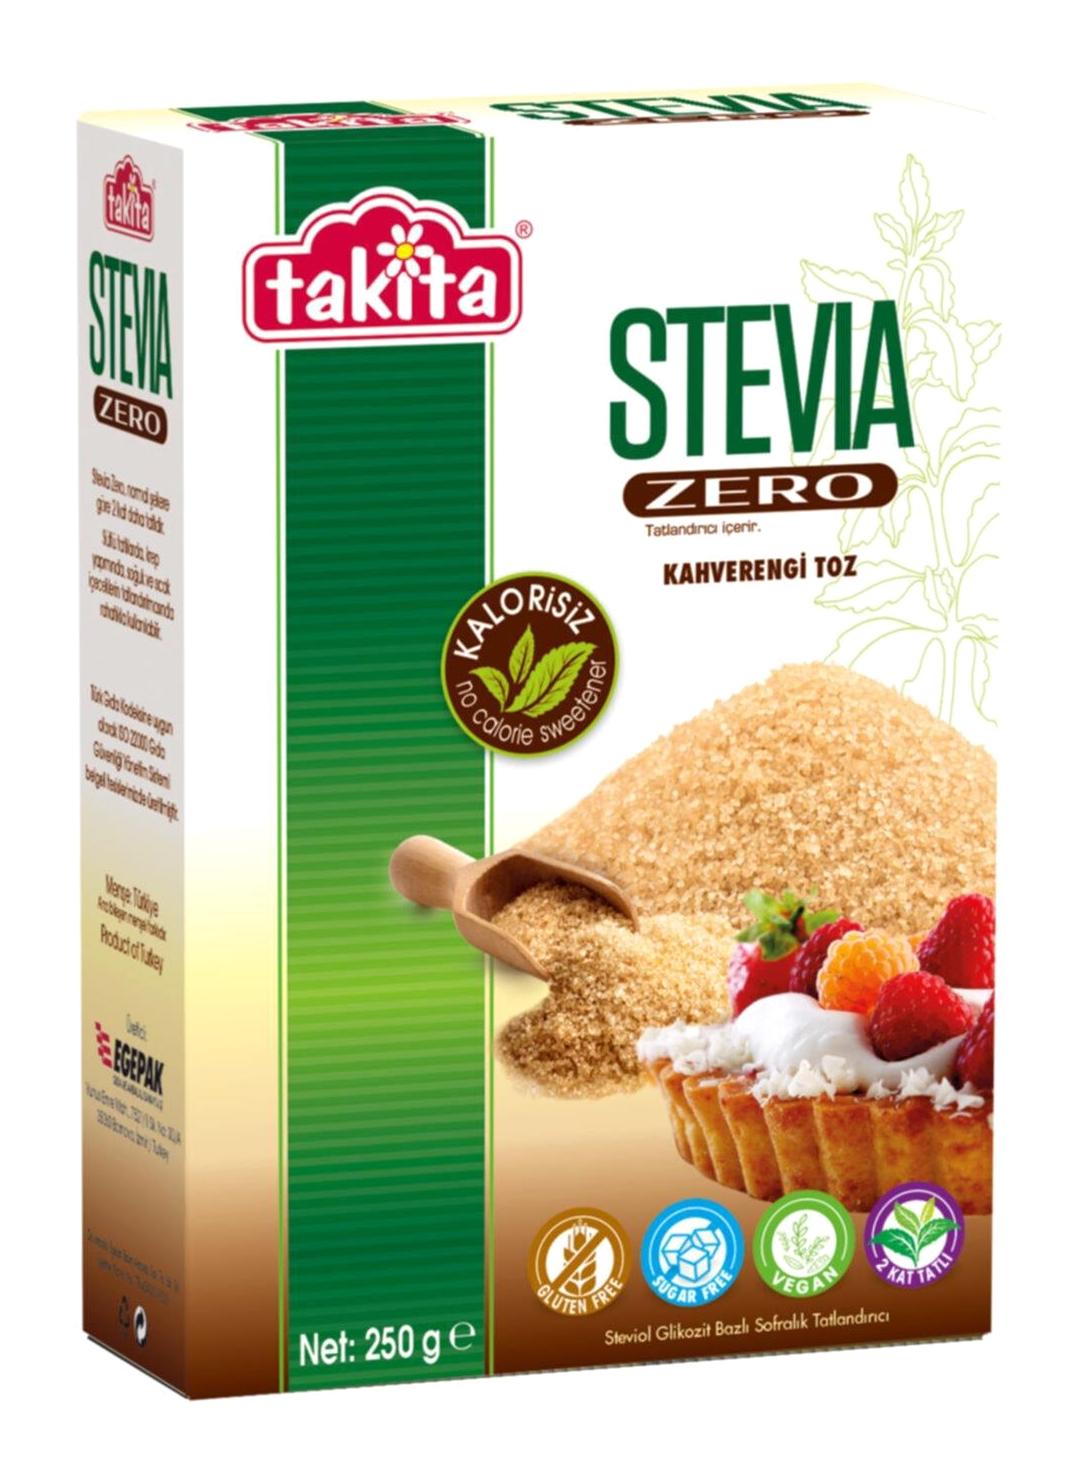 Takita Stevia Zero Kahverengi Toz Tatlandırıcı 250 gr